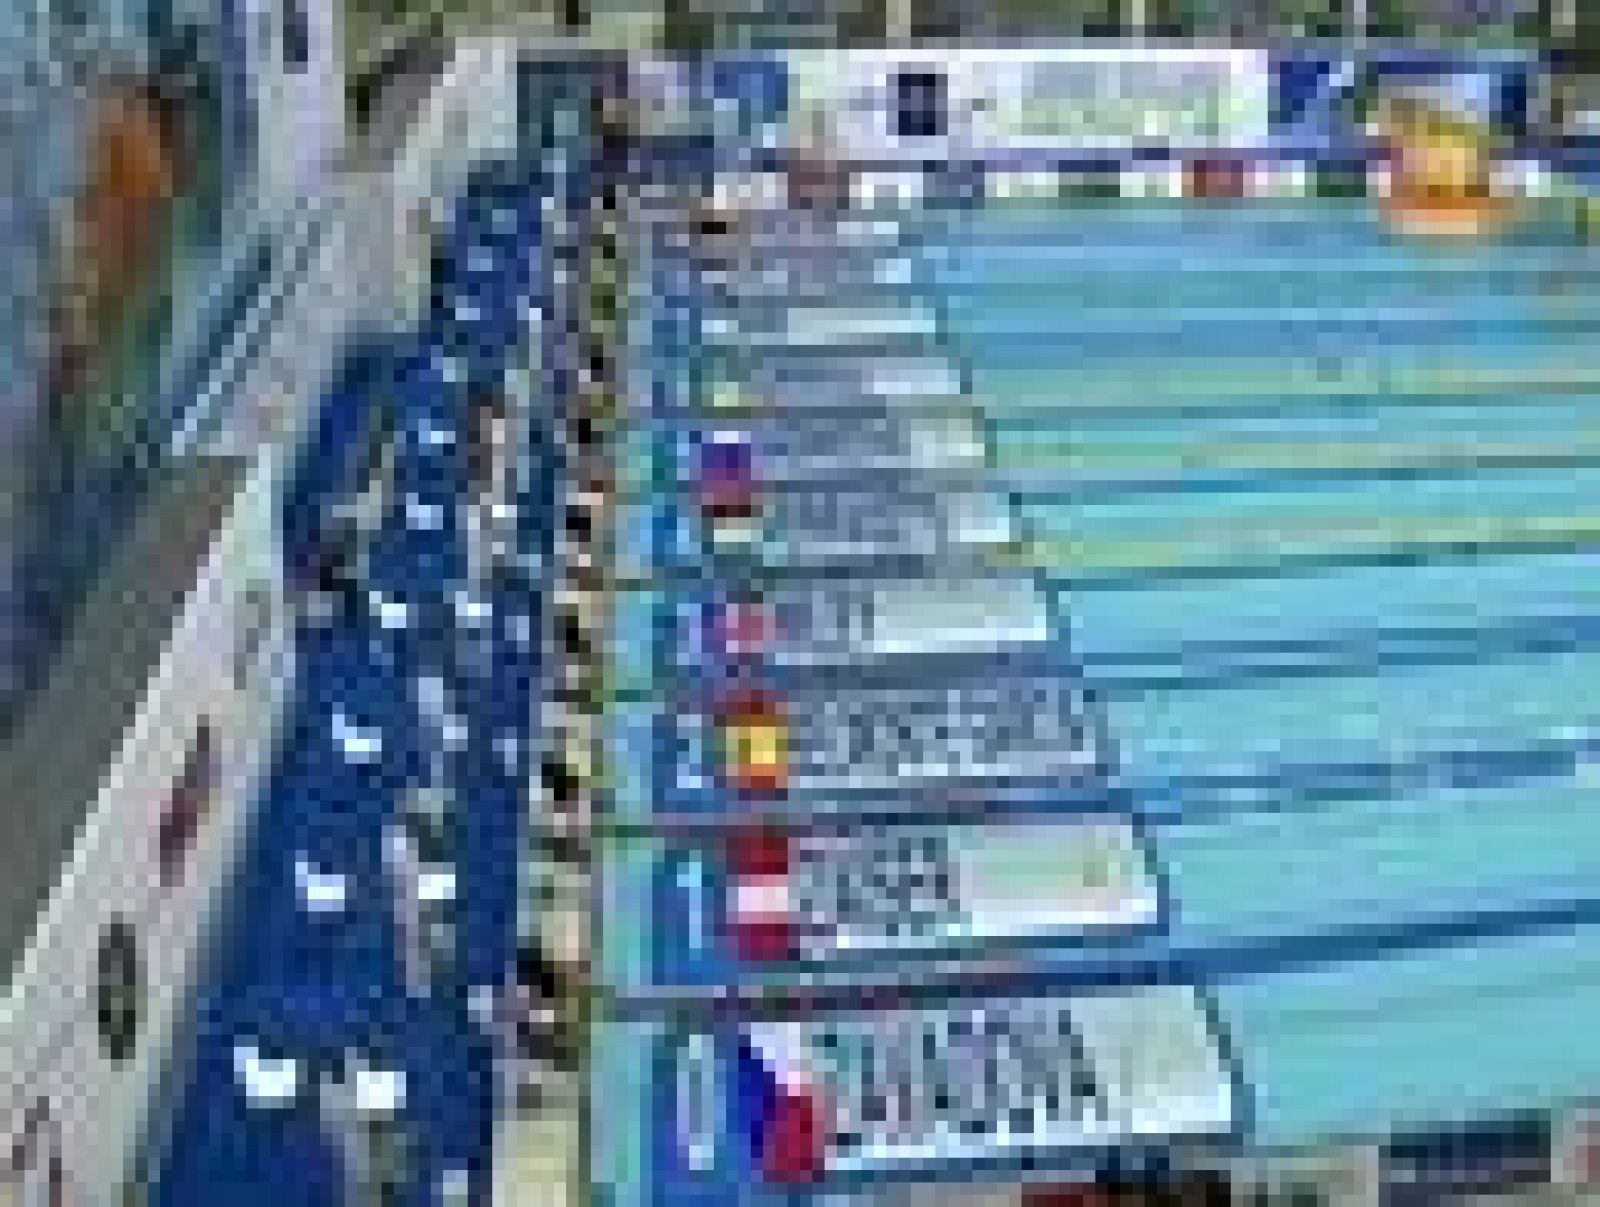 La nadadora española Mireia Belmonte se proclamó hoy campeona de Europa de los 200 metros estilos en los Campeonatos de Europa en piscina corta, de 25 metros, que se disputan en Szcezecin (Polonia).